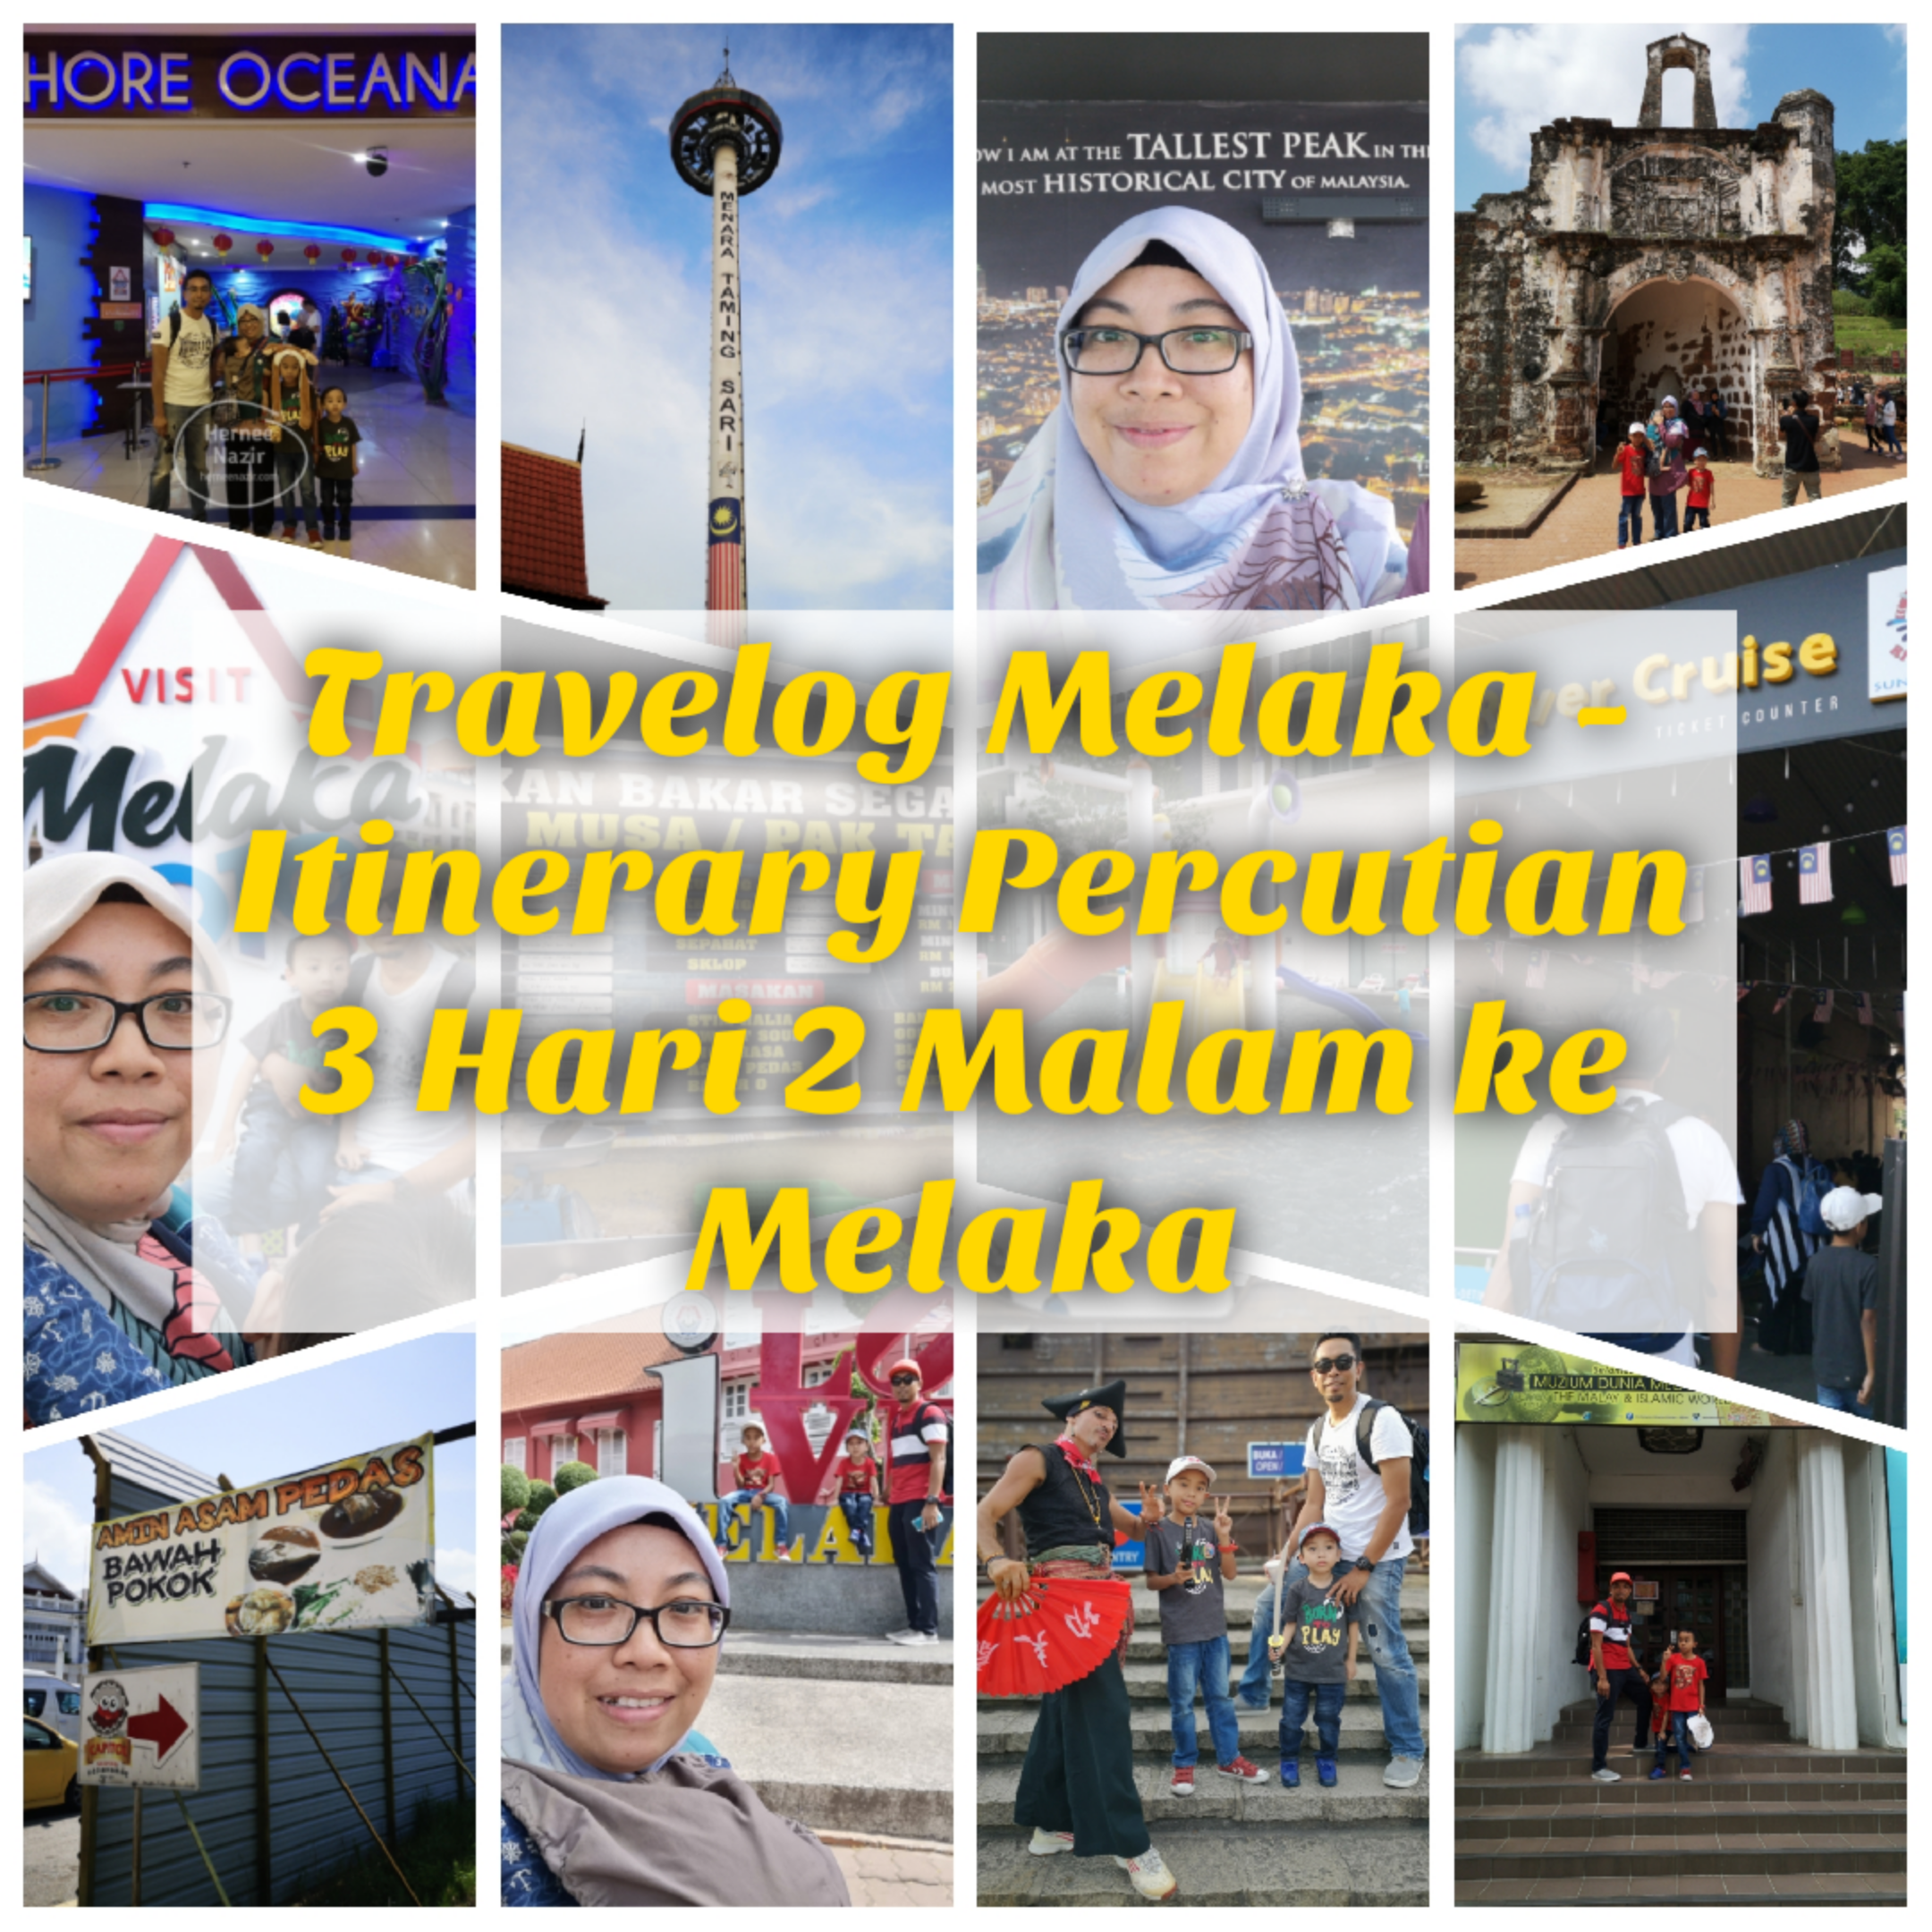 Travelog Melaka | Itinerary Percutian 3 Hari 2 Malam ke Melaka